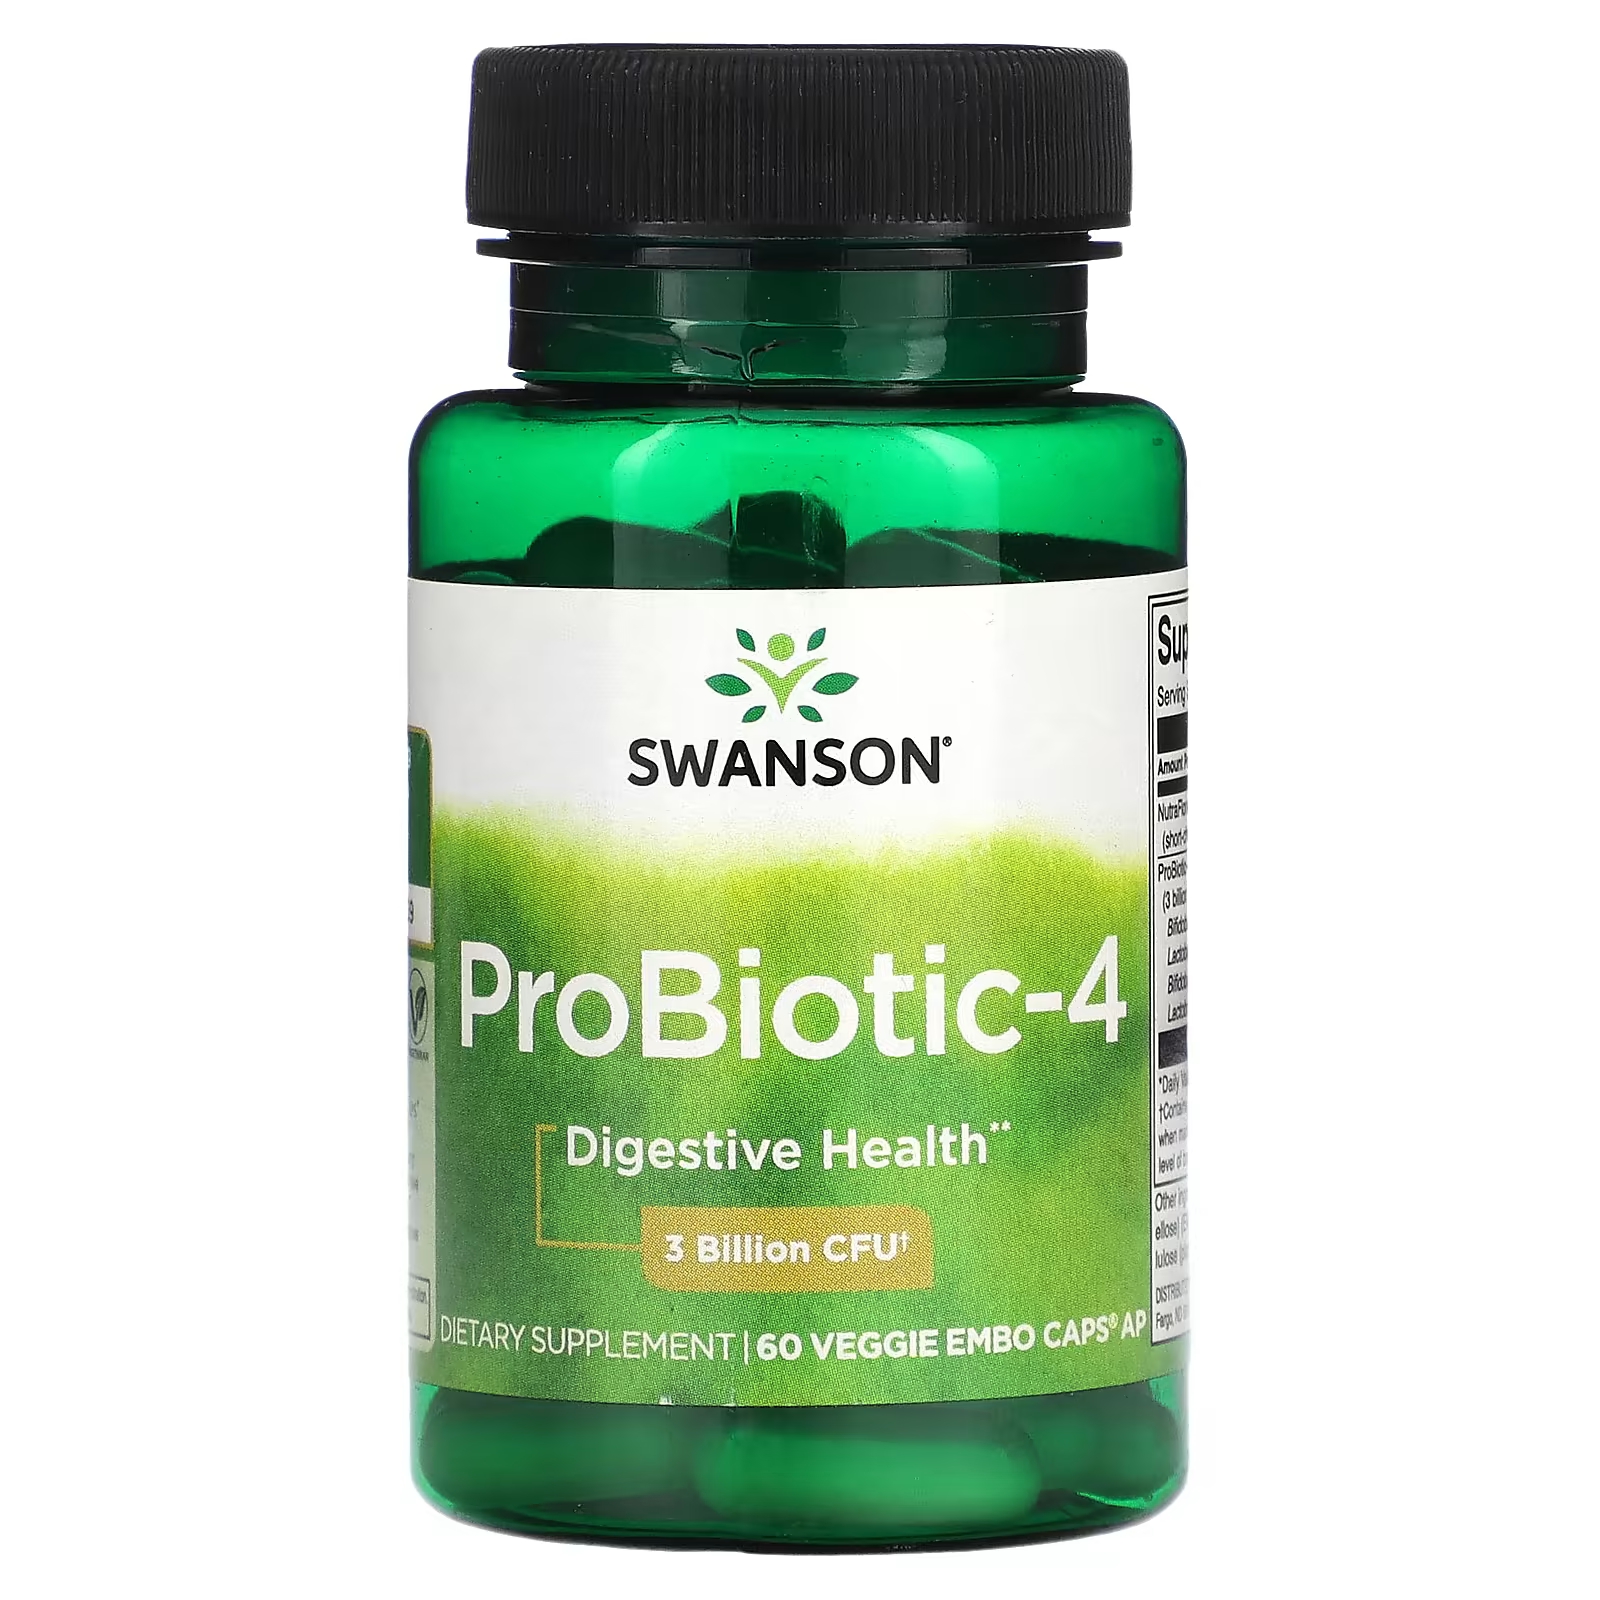 Пищевая добавка Swanson Probiotic 4.3 Billion CFU, 60 капсул пищевая добавка kal acidophilus probiotic 5 60 растительных капсул